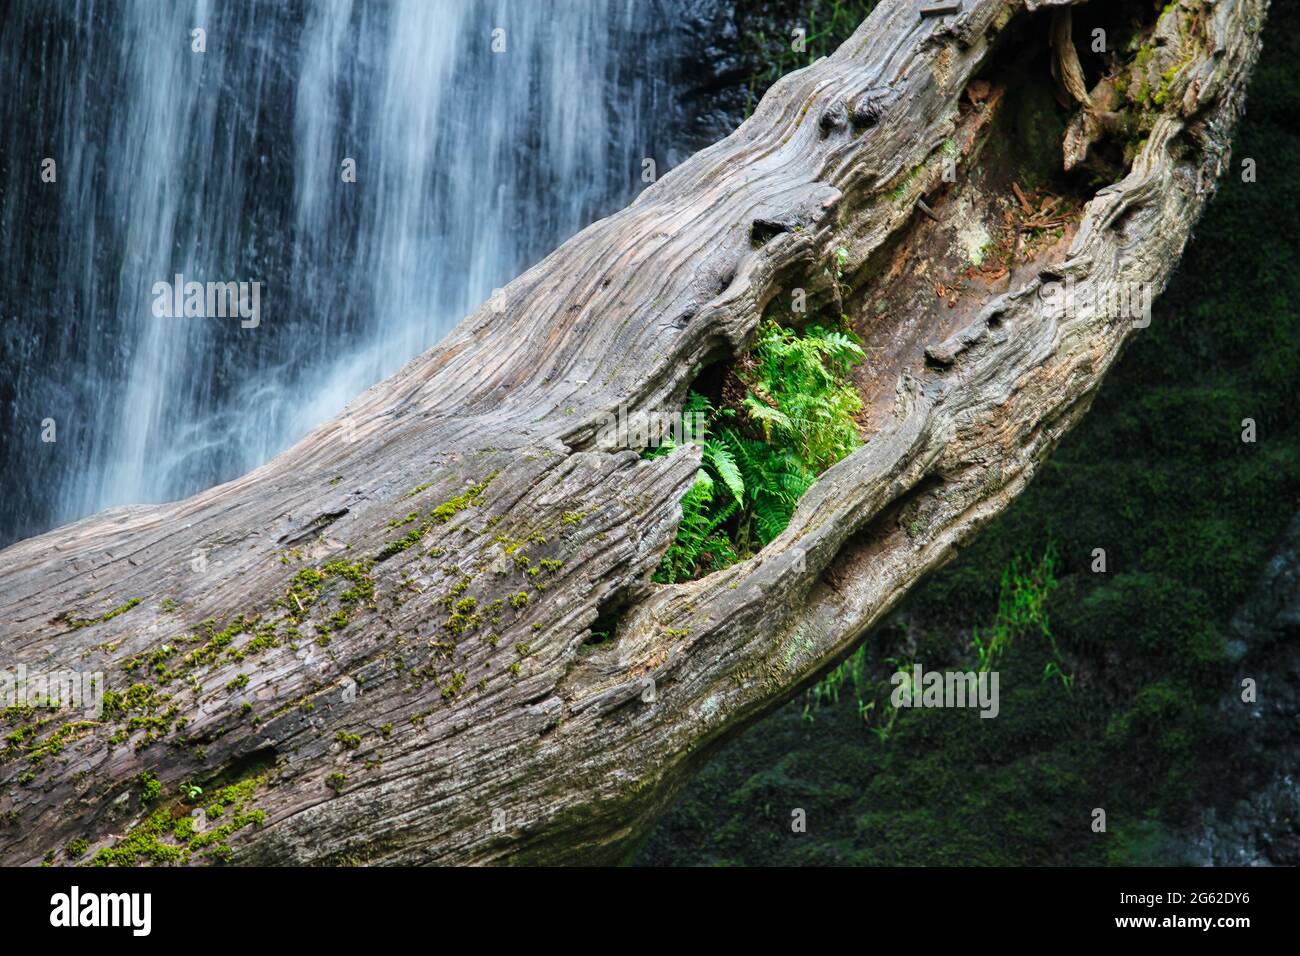 Árbol caído en una piscina de cascada con un helecho que crece de ella Foto de stock